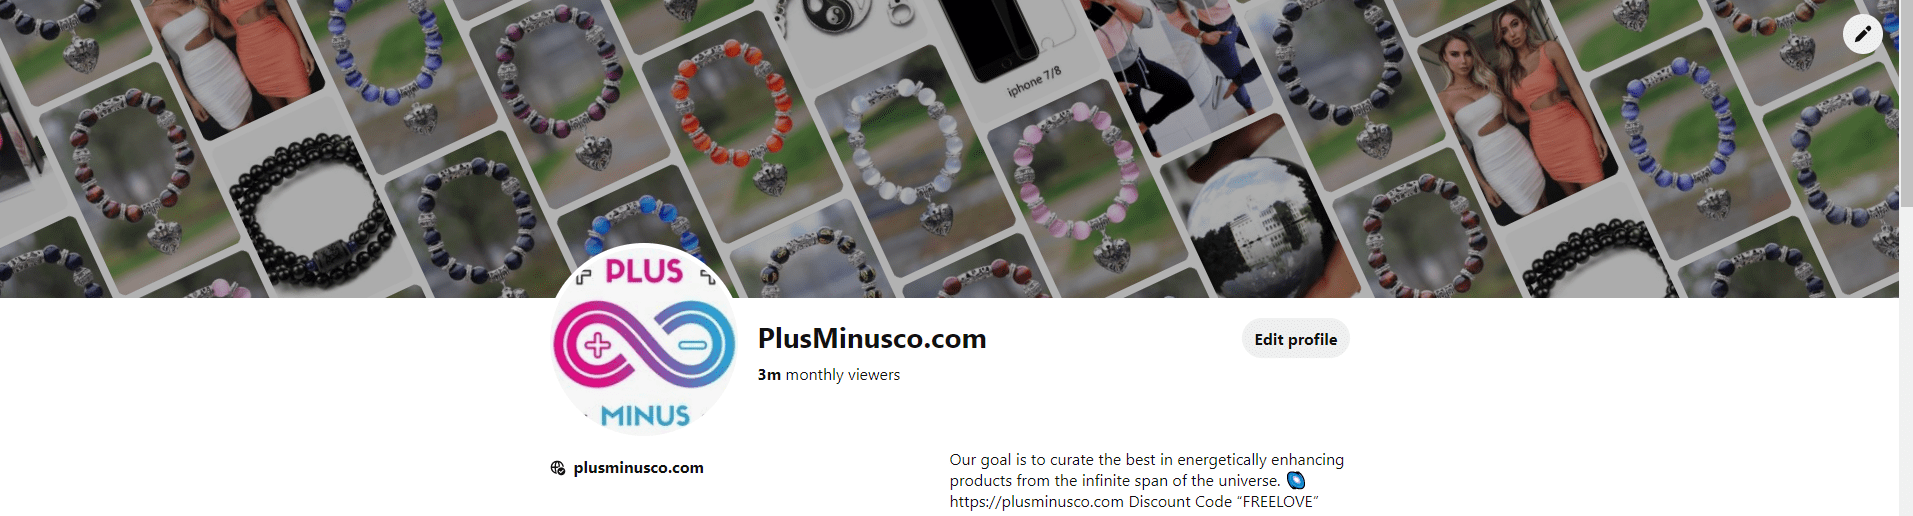 Bracelets - plusminusco.com